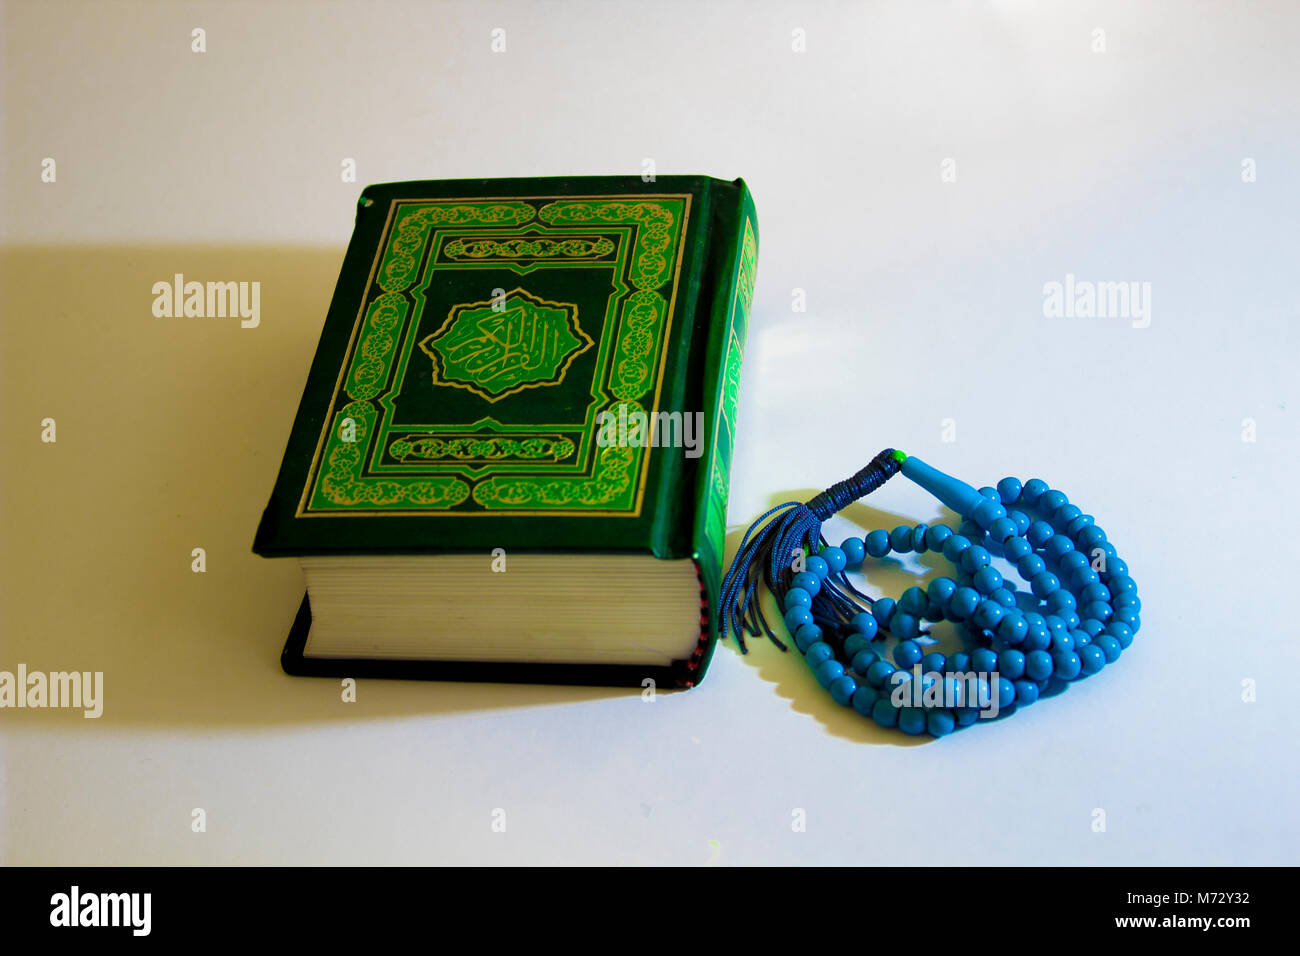 Le livre saint des musulmans est Coran Banque D'Images